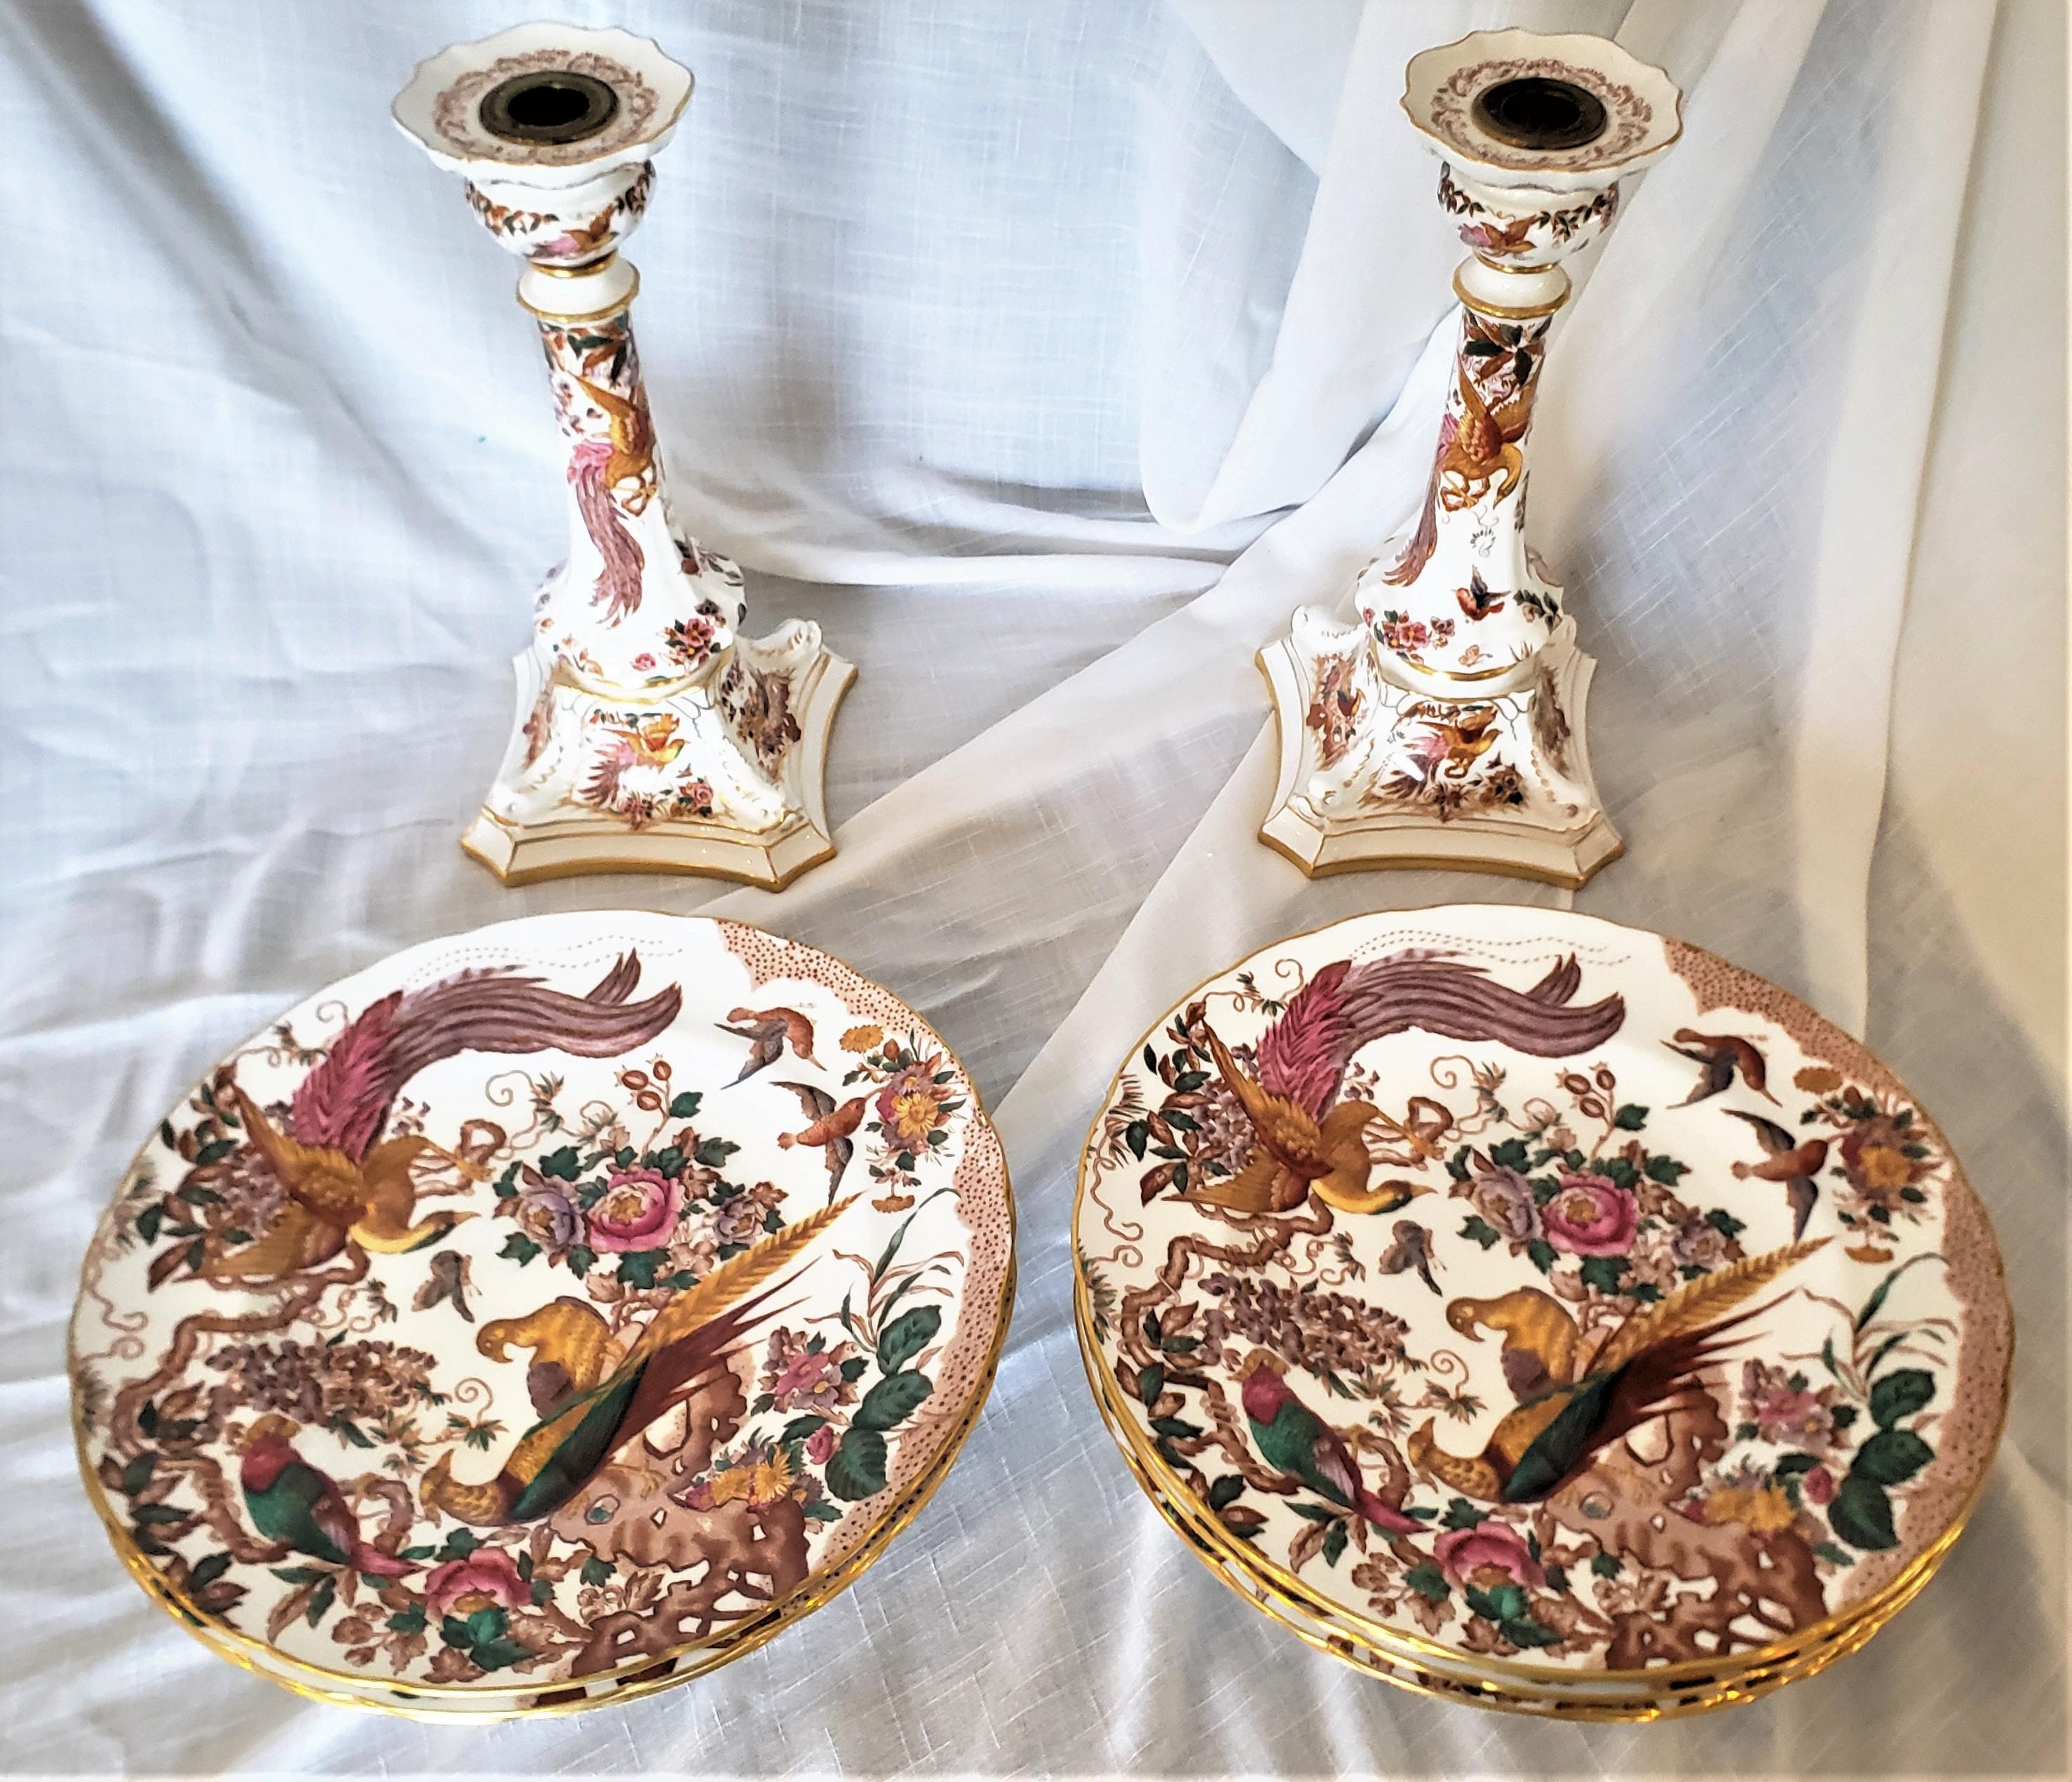 Diese hohen Kerzenständer und Essteller wurden von der berühmten englischen Porzellanmanufaktur Royal Crown Derby hergestellt. Die Kerzenständer und Teller sind in ihrem 'Olde Avesbury'-Muster mit lebhaften exotischen Vögeln als Dekoration